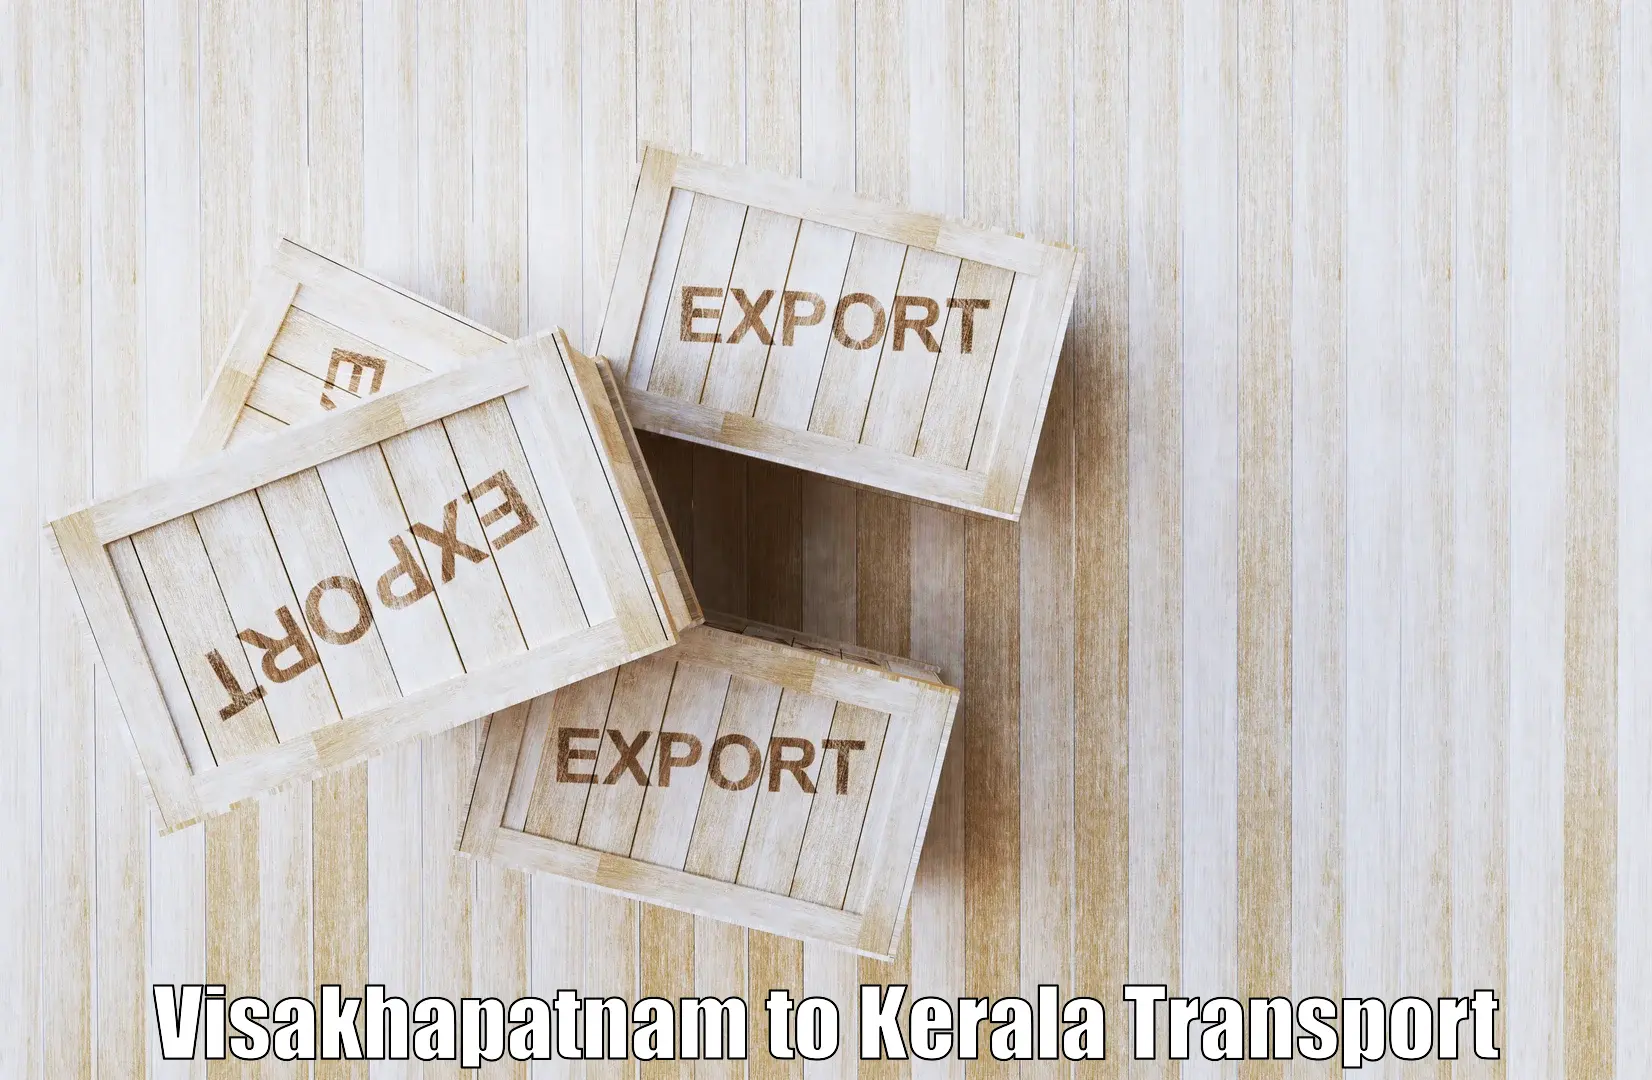 Intercity transport in Visakhapatnam to Kiliyanthara